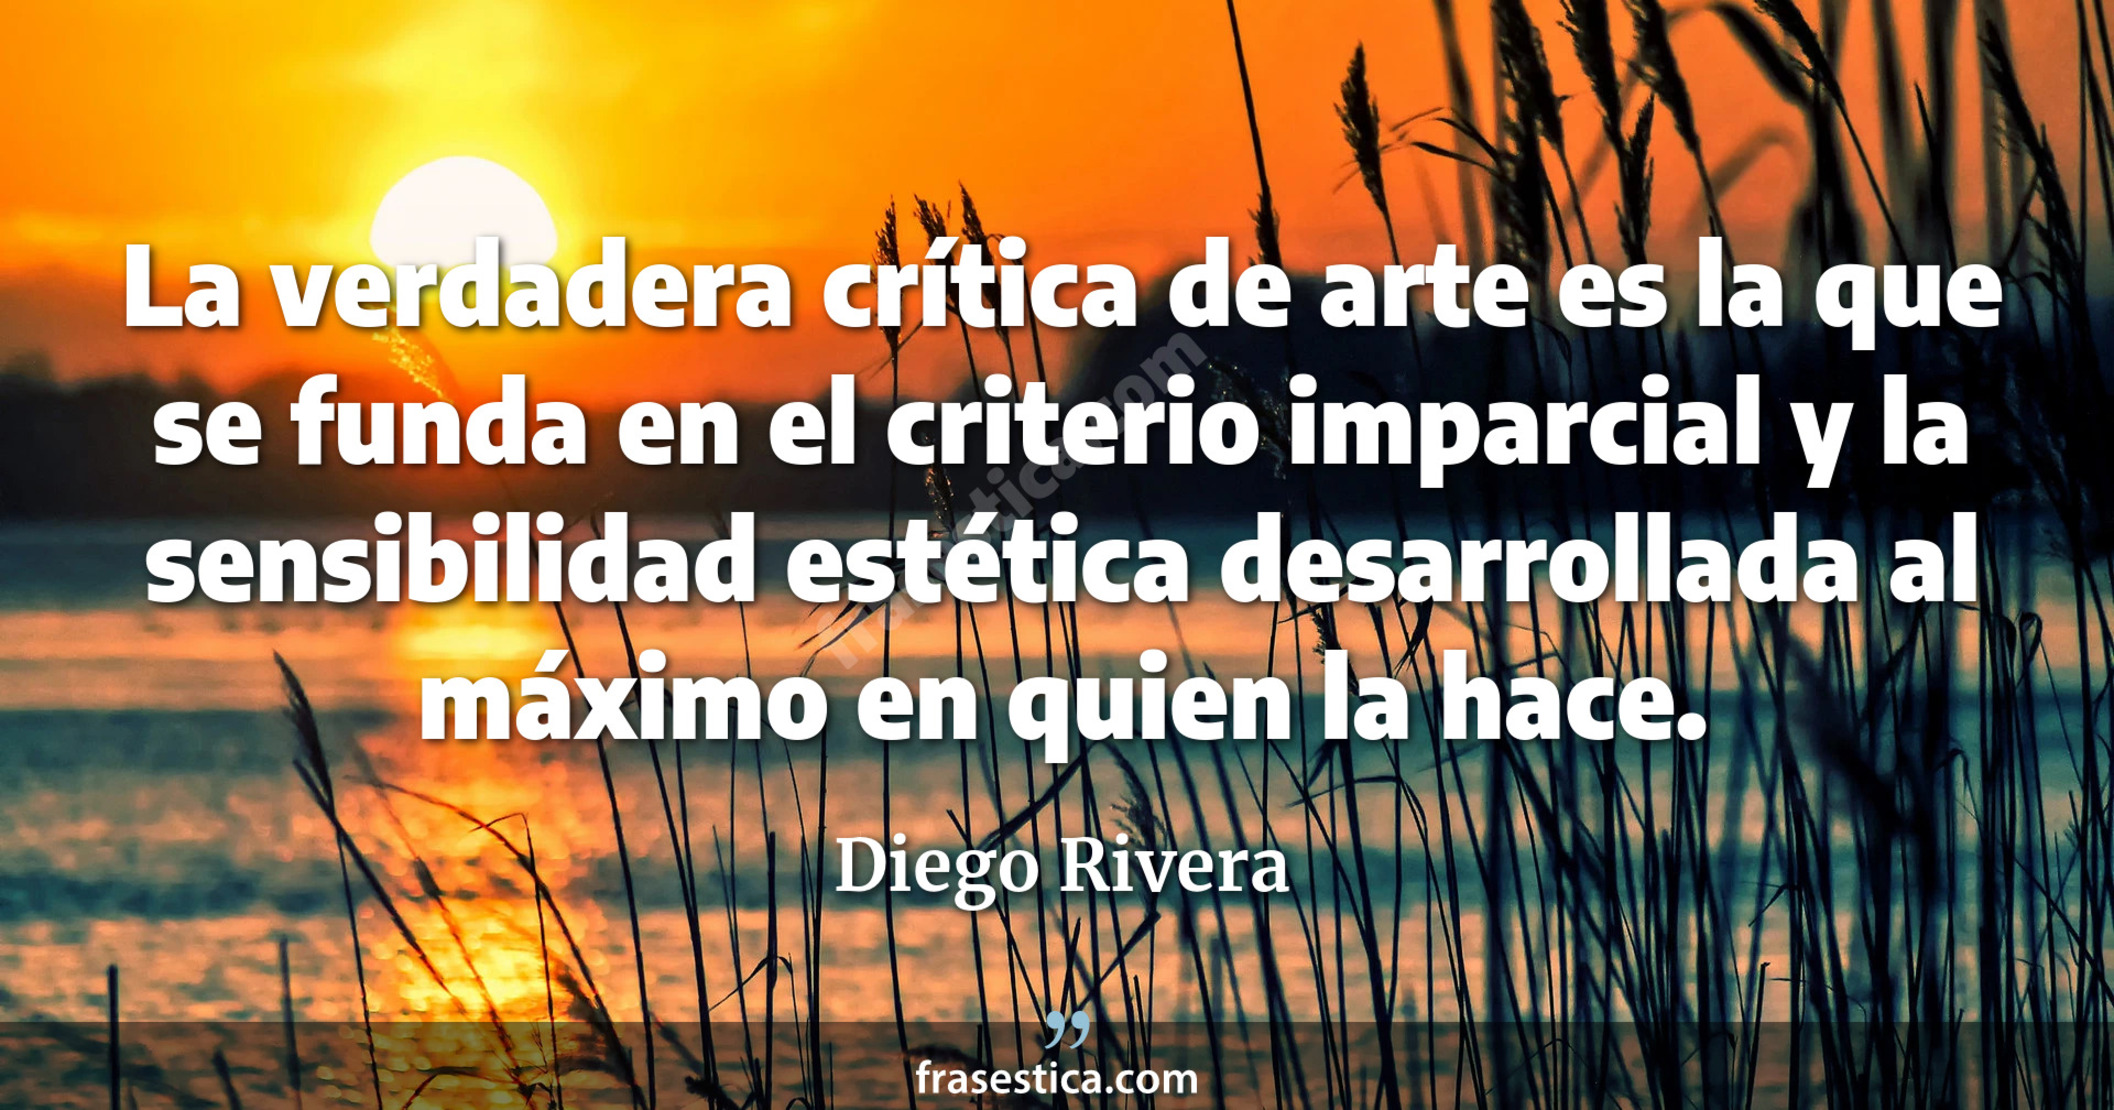 La verdadera crítica de arte es la que se funda en el criterio imparcial y la sensibilidad estética desarrollada al máximo en quien la hace. - Diego Rivera